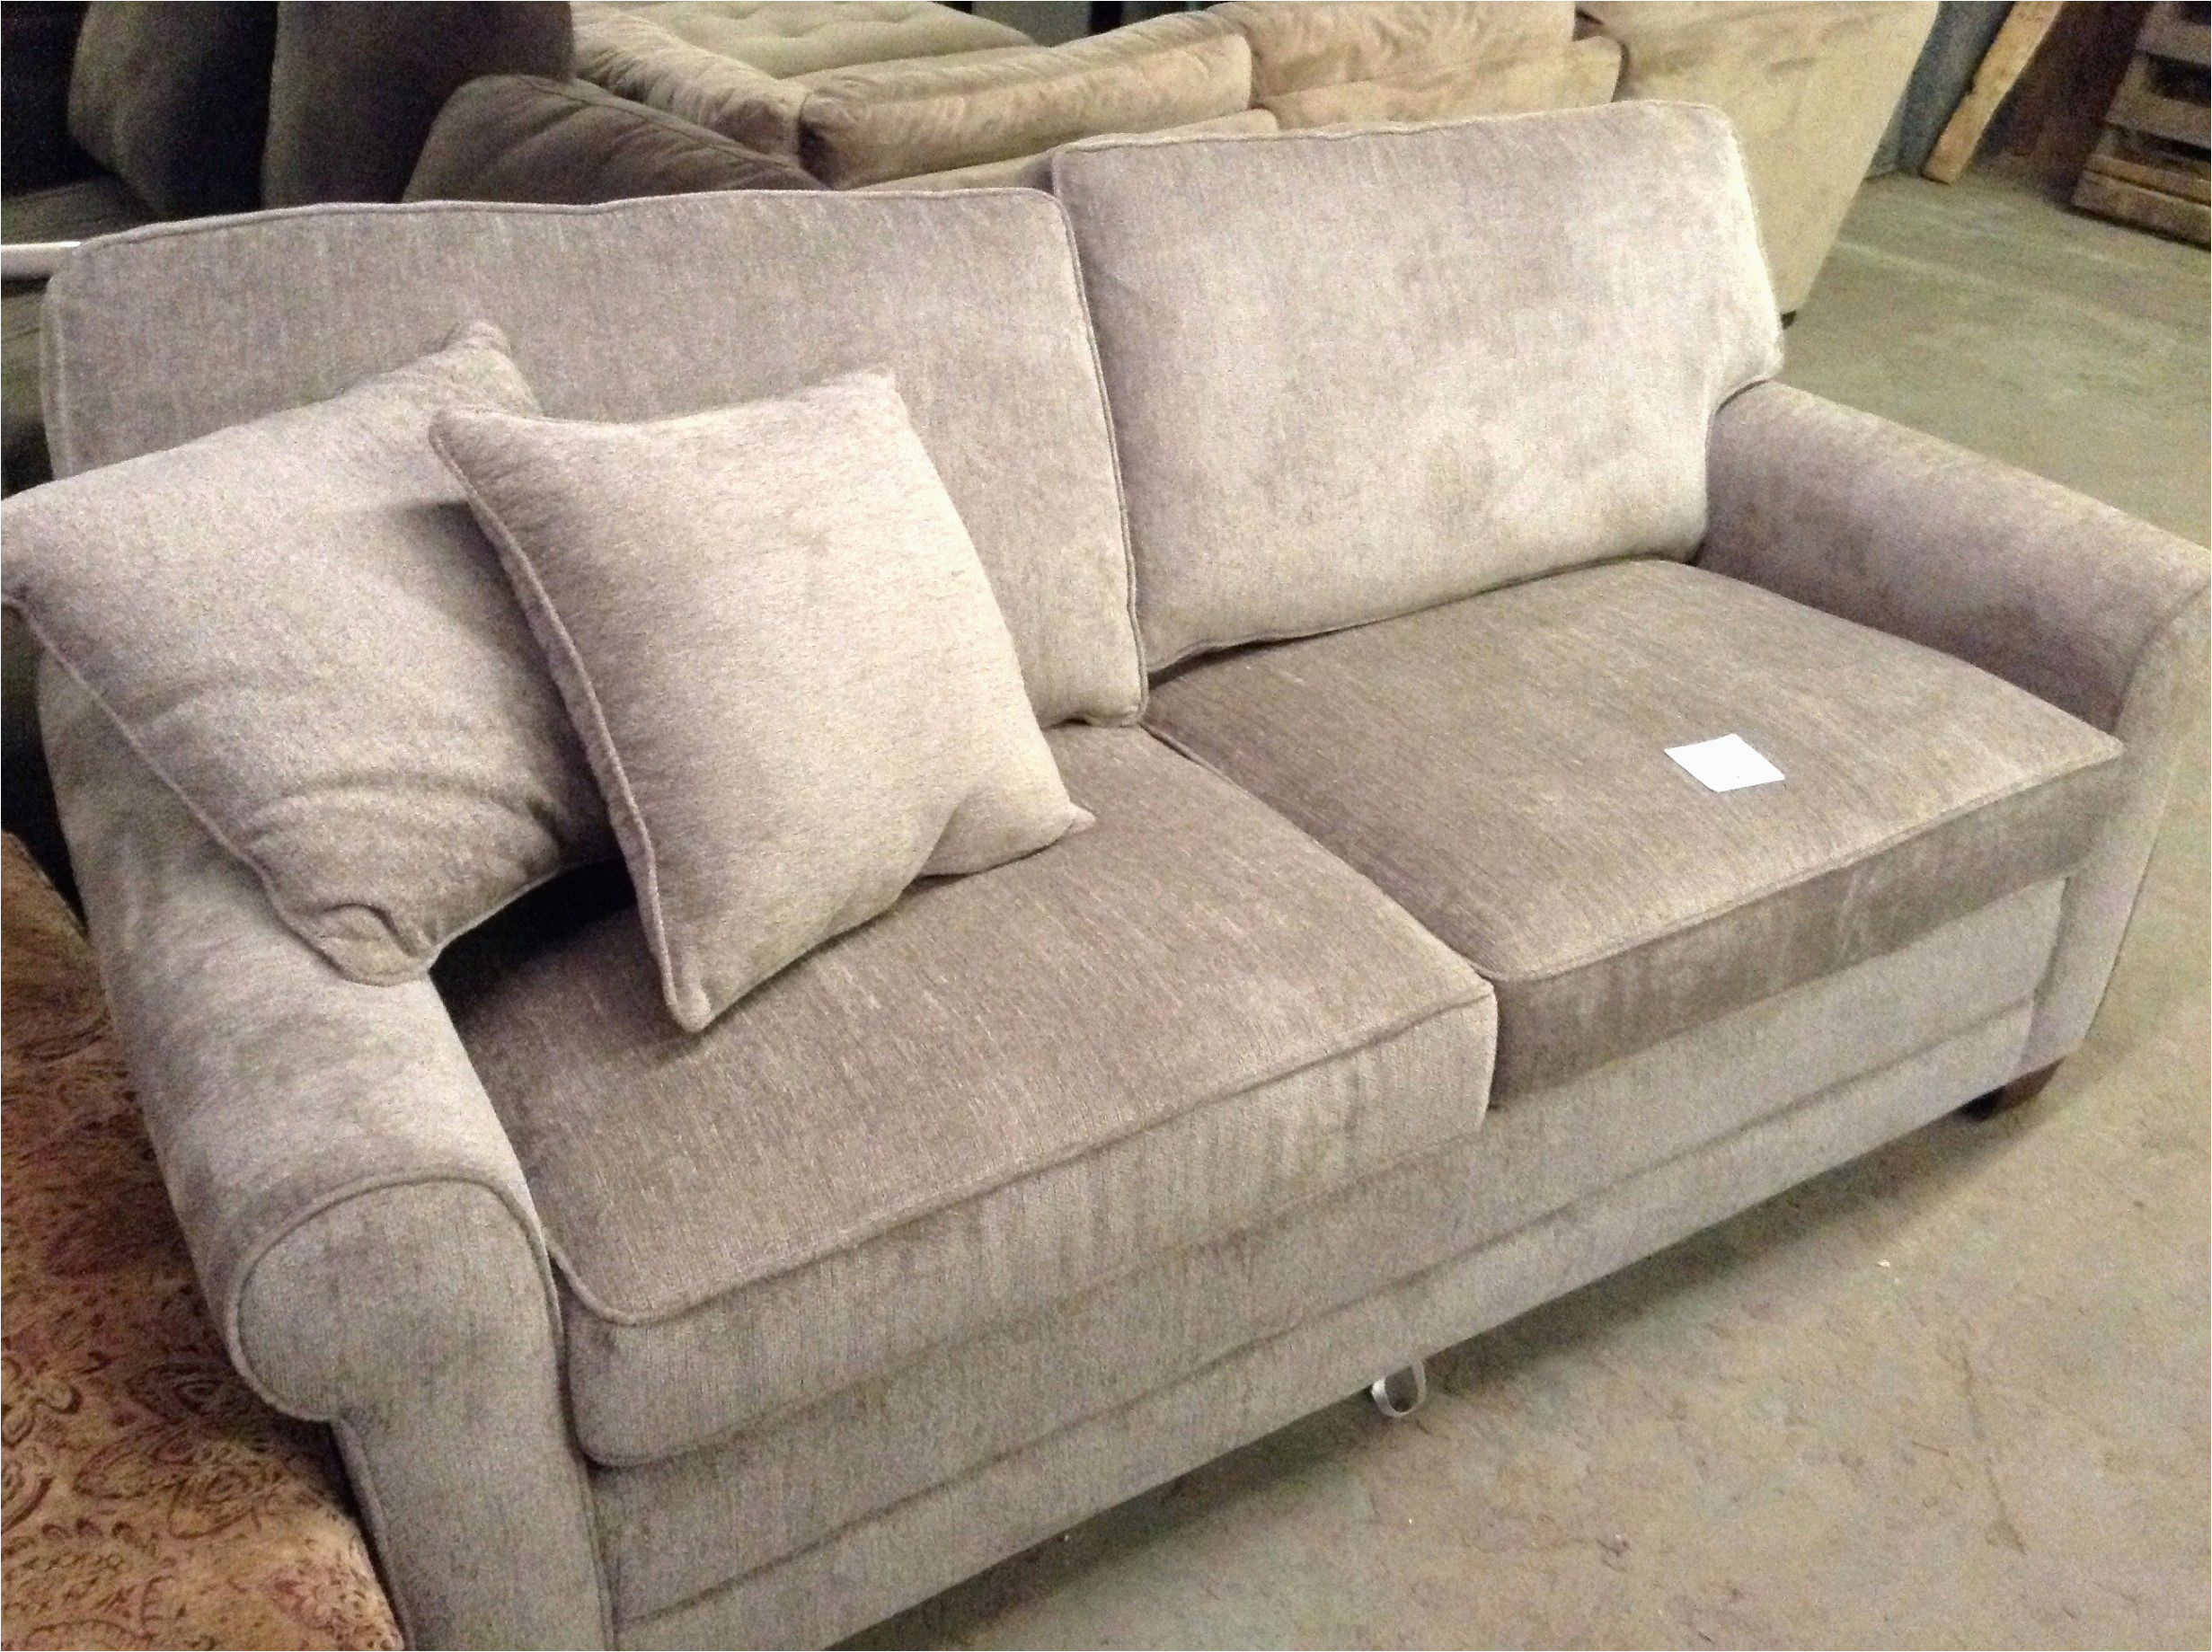 stuhl neu beziehen couch neu beziehen best sessel beziehen 0d ahmktygs luxus sofa neu elegant